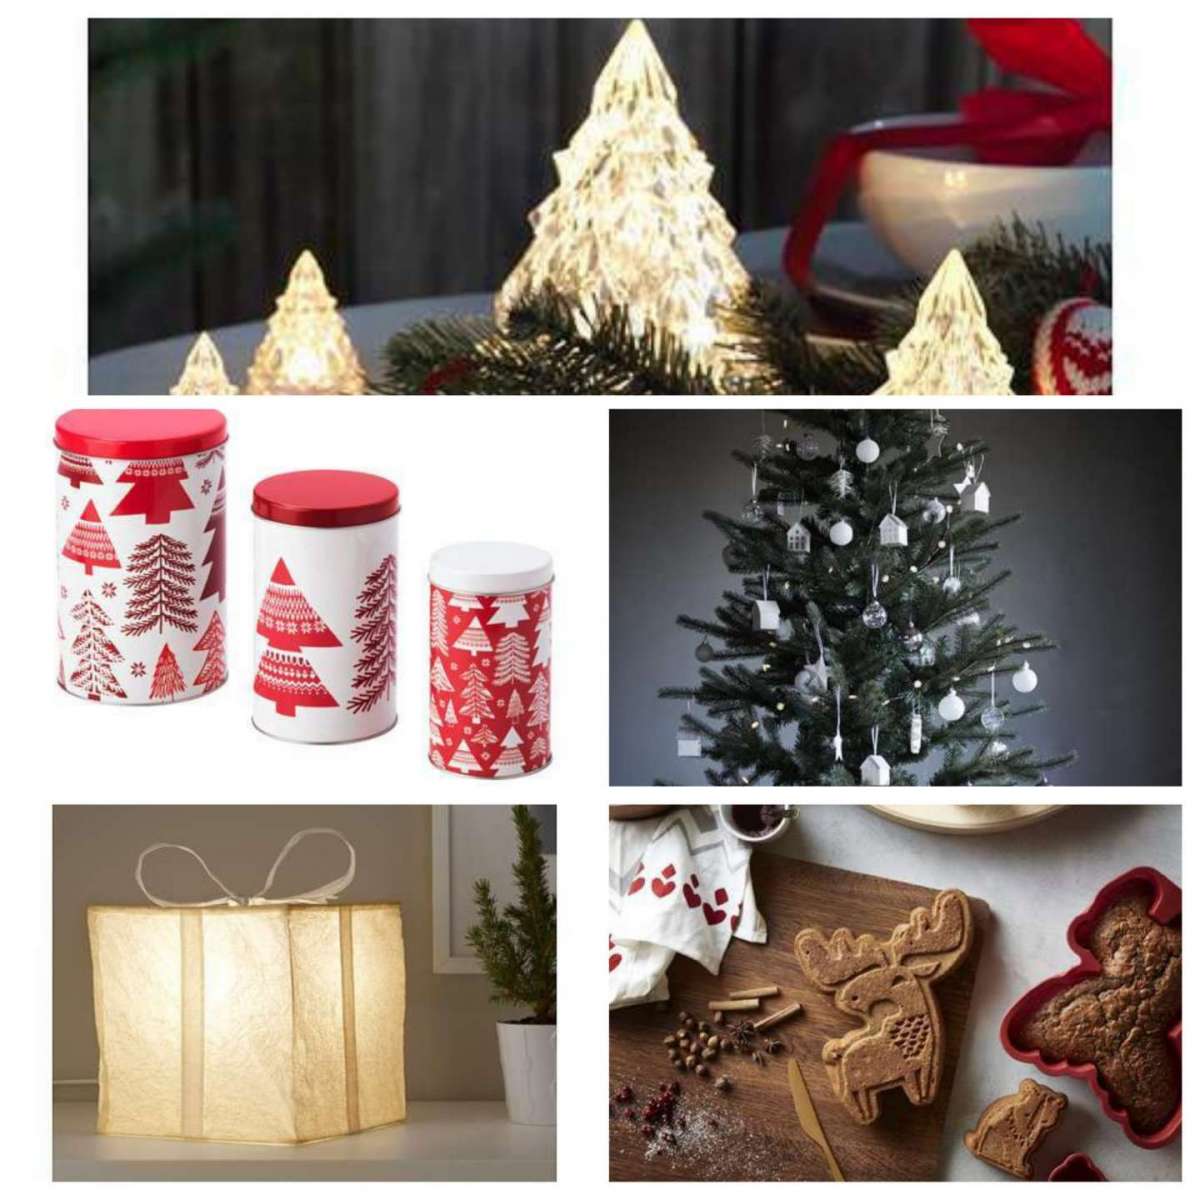 IKEA Natale 2017: le decorazioni e gli accessori a tema